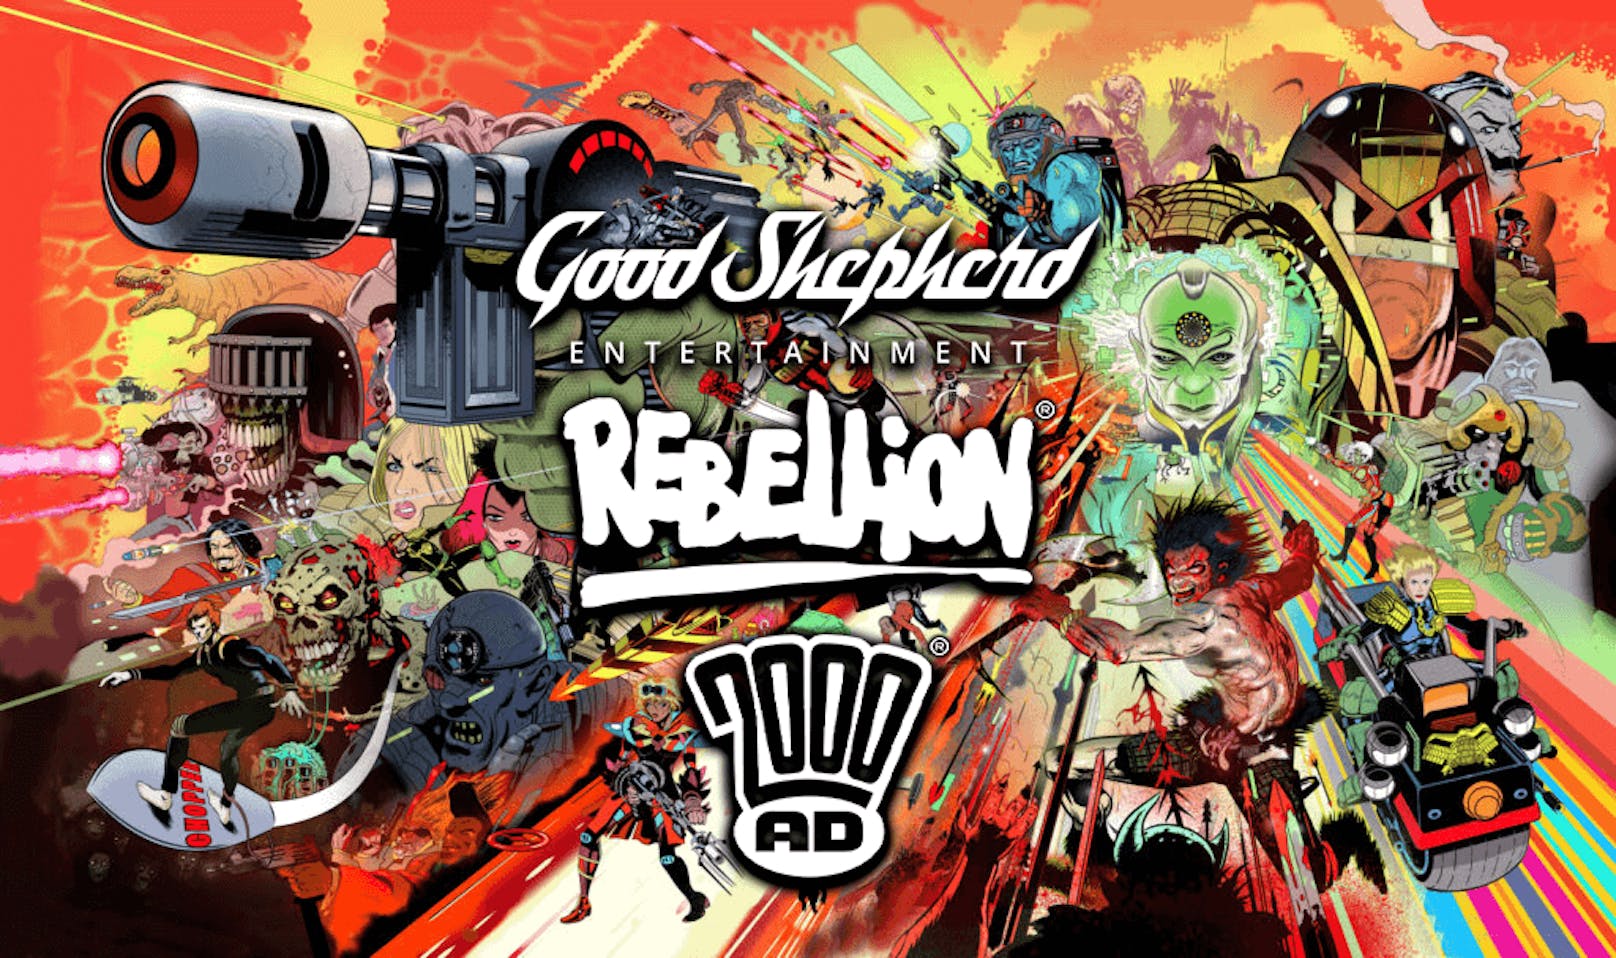 Good Shepherd geht eine Partnerschaft mit Rebellion ein, um Spiele im ikonischen 2000 AD-Universum zu erschaffen.